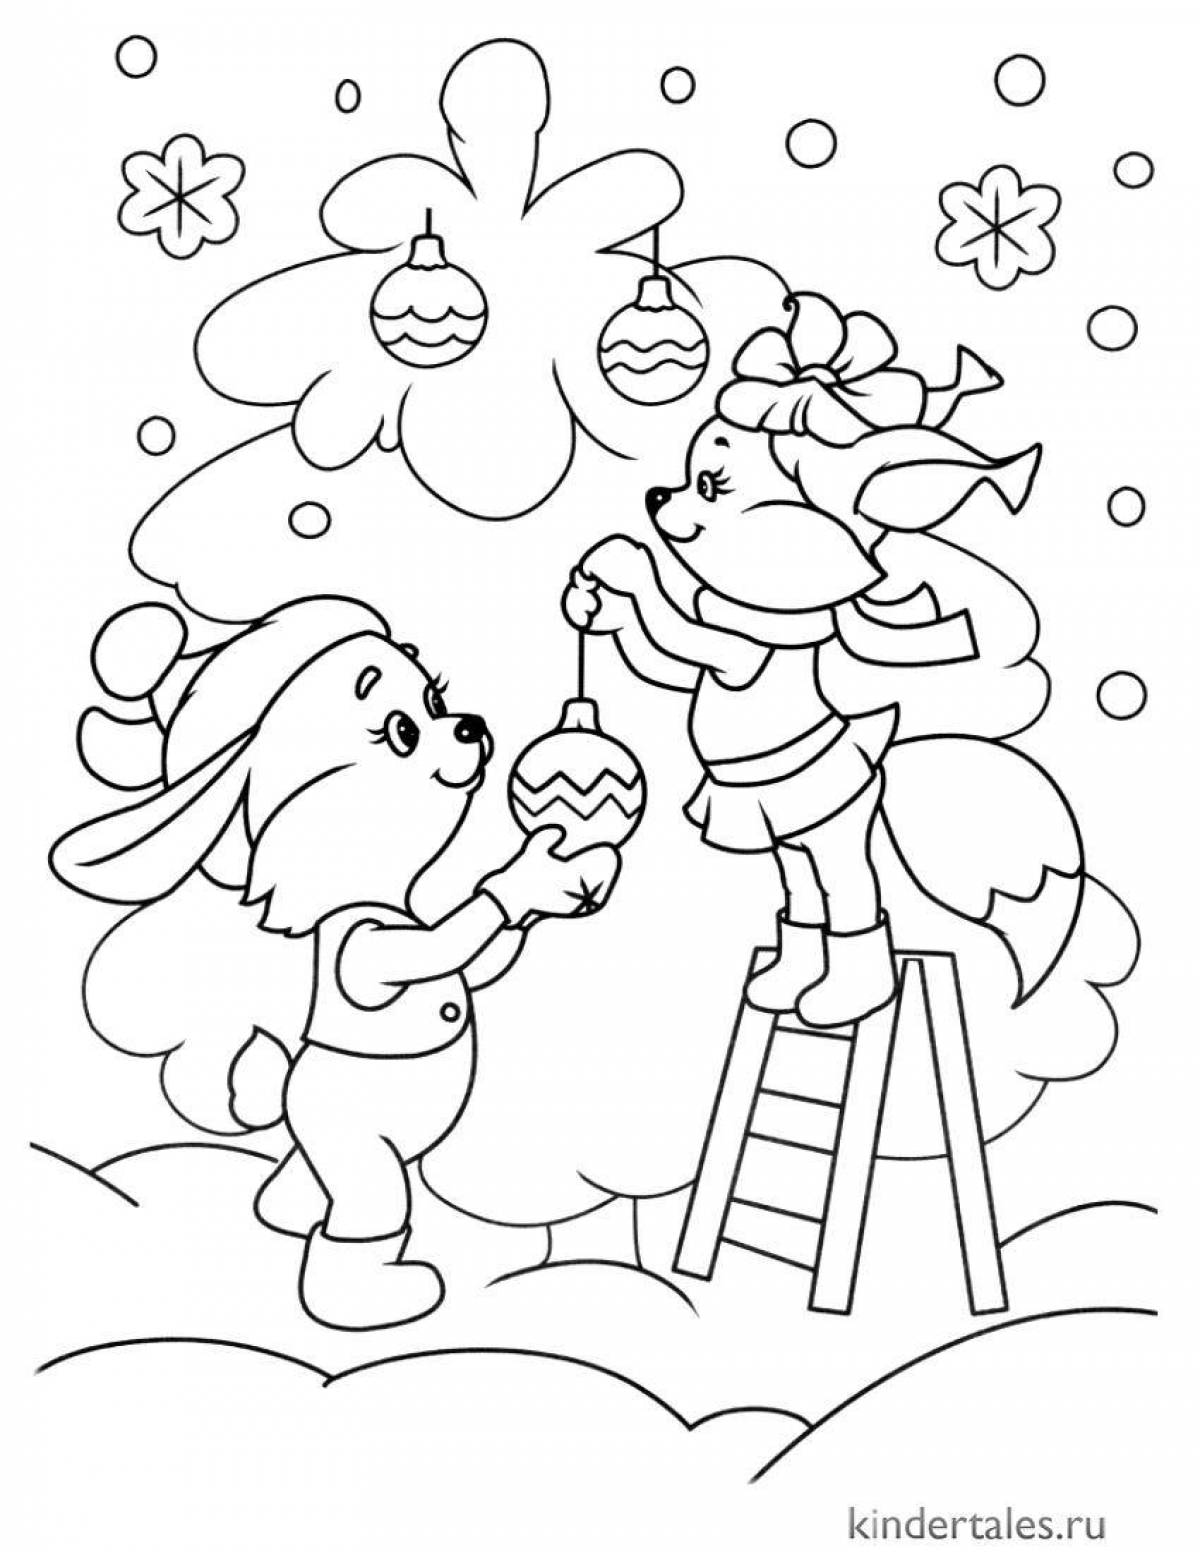 Волшебная рождественская елка и раскраска кролика